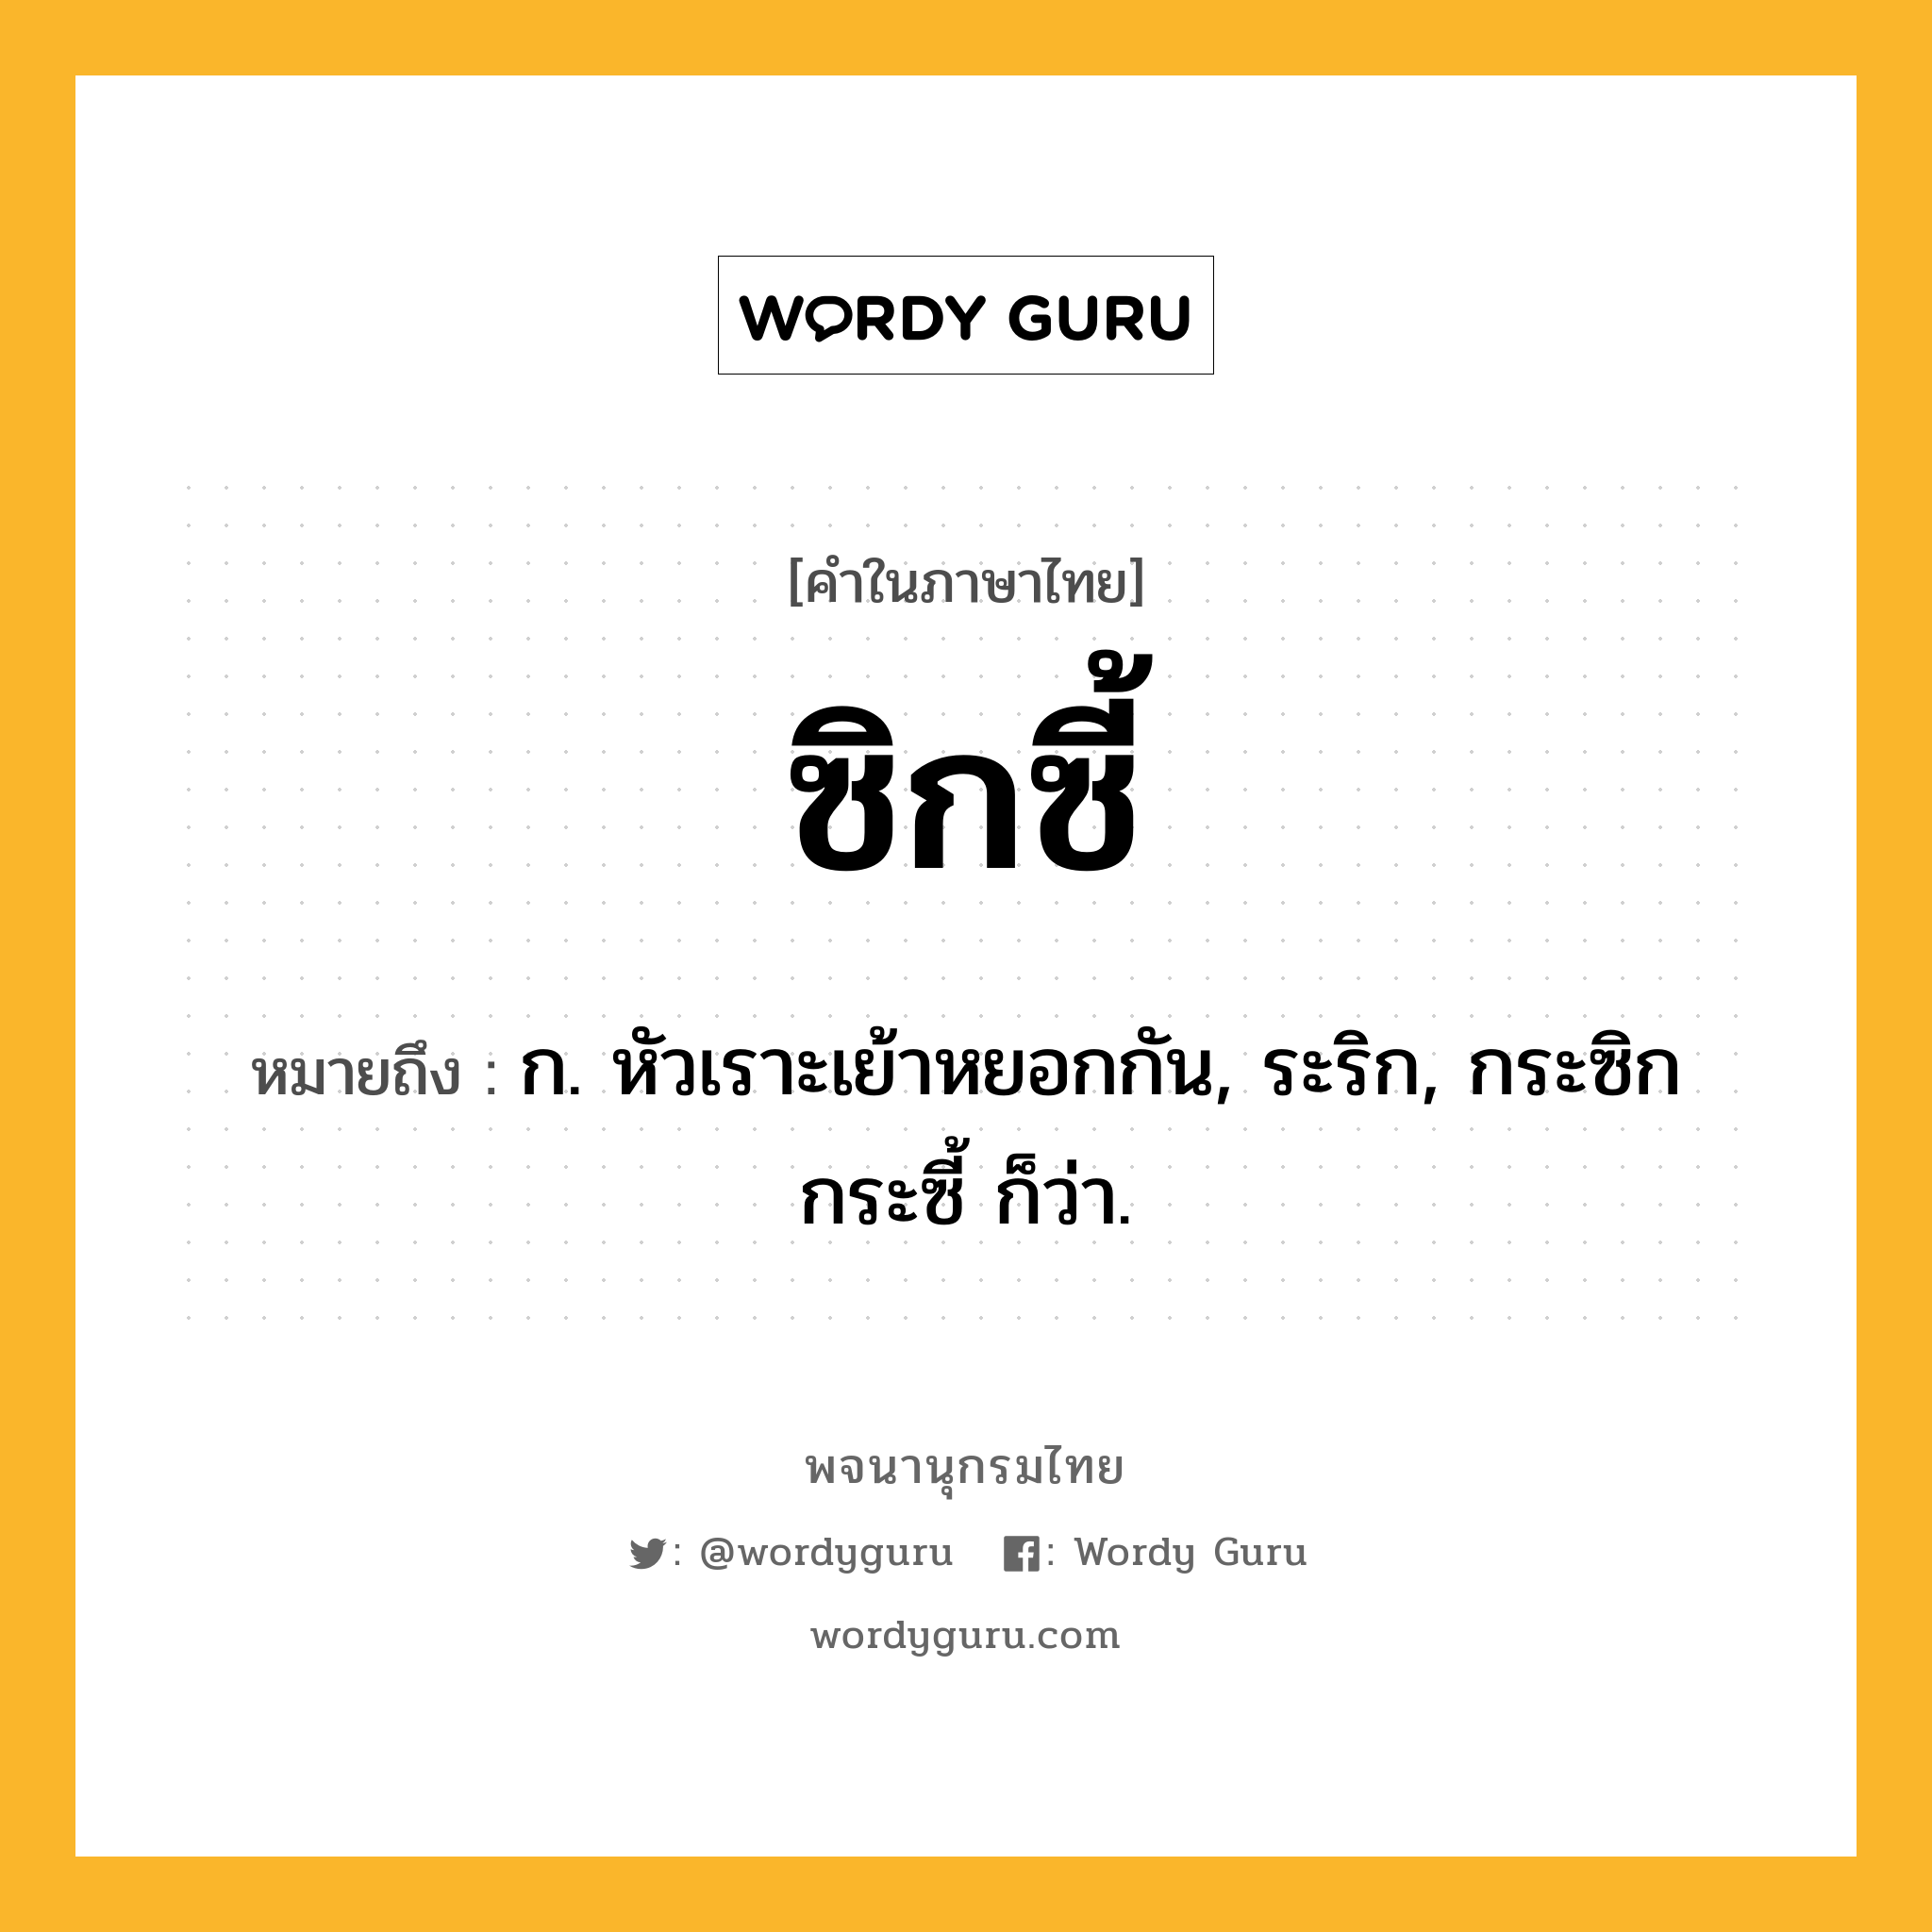 ซิกซี้ ความหมาย หมายถึงอะไร?, คำในภาษาไทย ซิกซี้ หมายถึง ก. หัวเราะเย้าหยอกกัน, ระริก, กระซิกกระซี้ ก็ว่า.